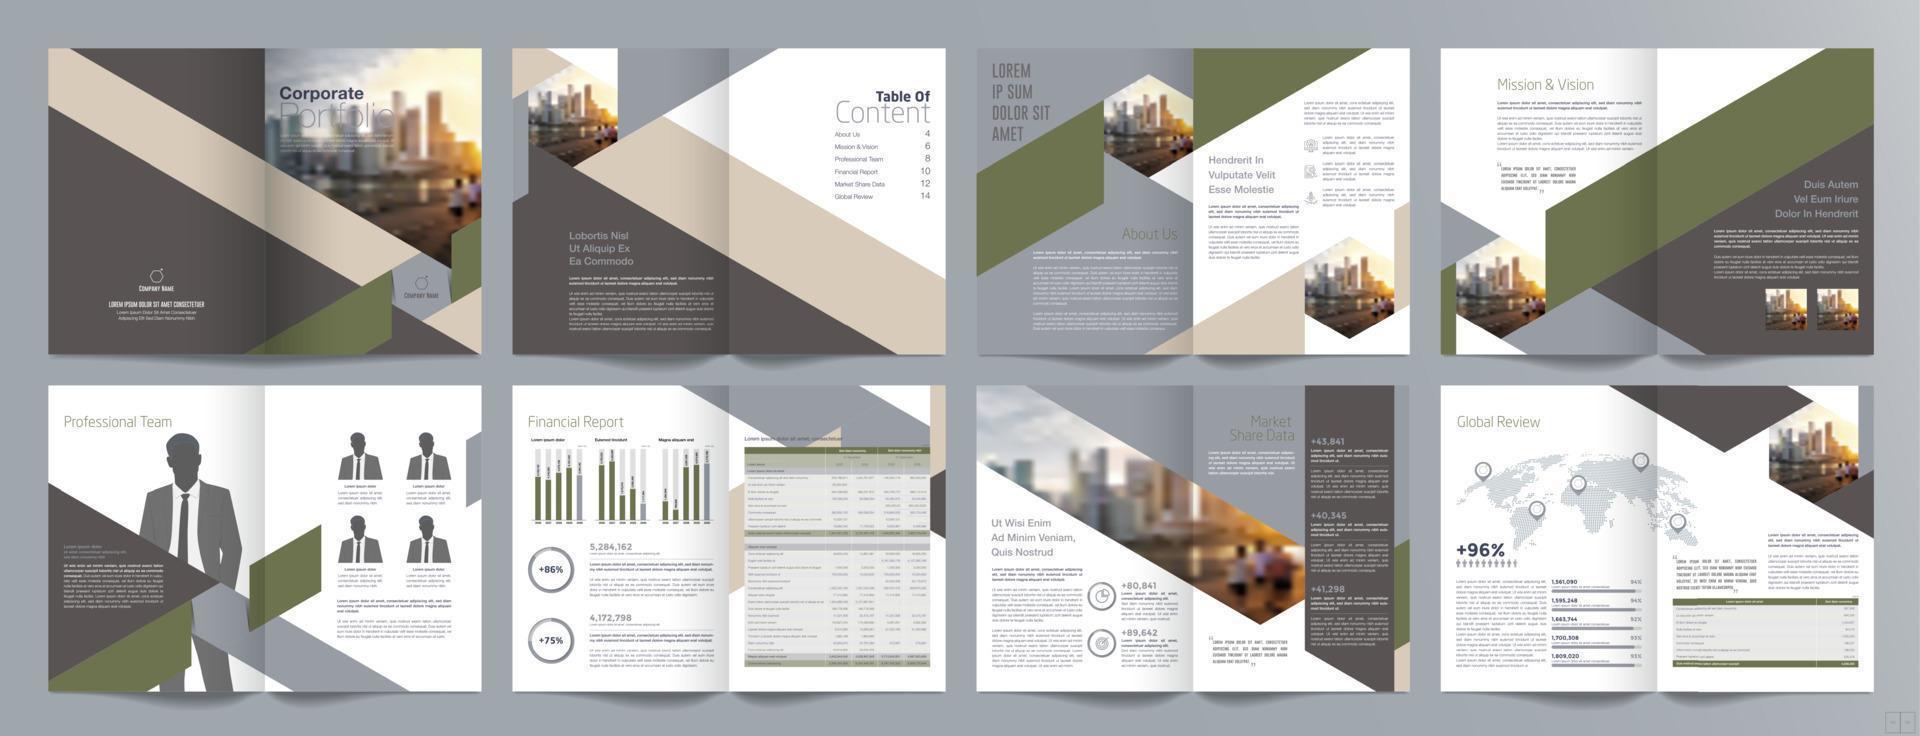 modelo de folheto de guia de apresentação de negócios corporativos, relatório anual, modelo de design de folheto de negócios geométrico plano minimalista de 16 páginas, tamanho a4. vetor